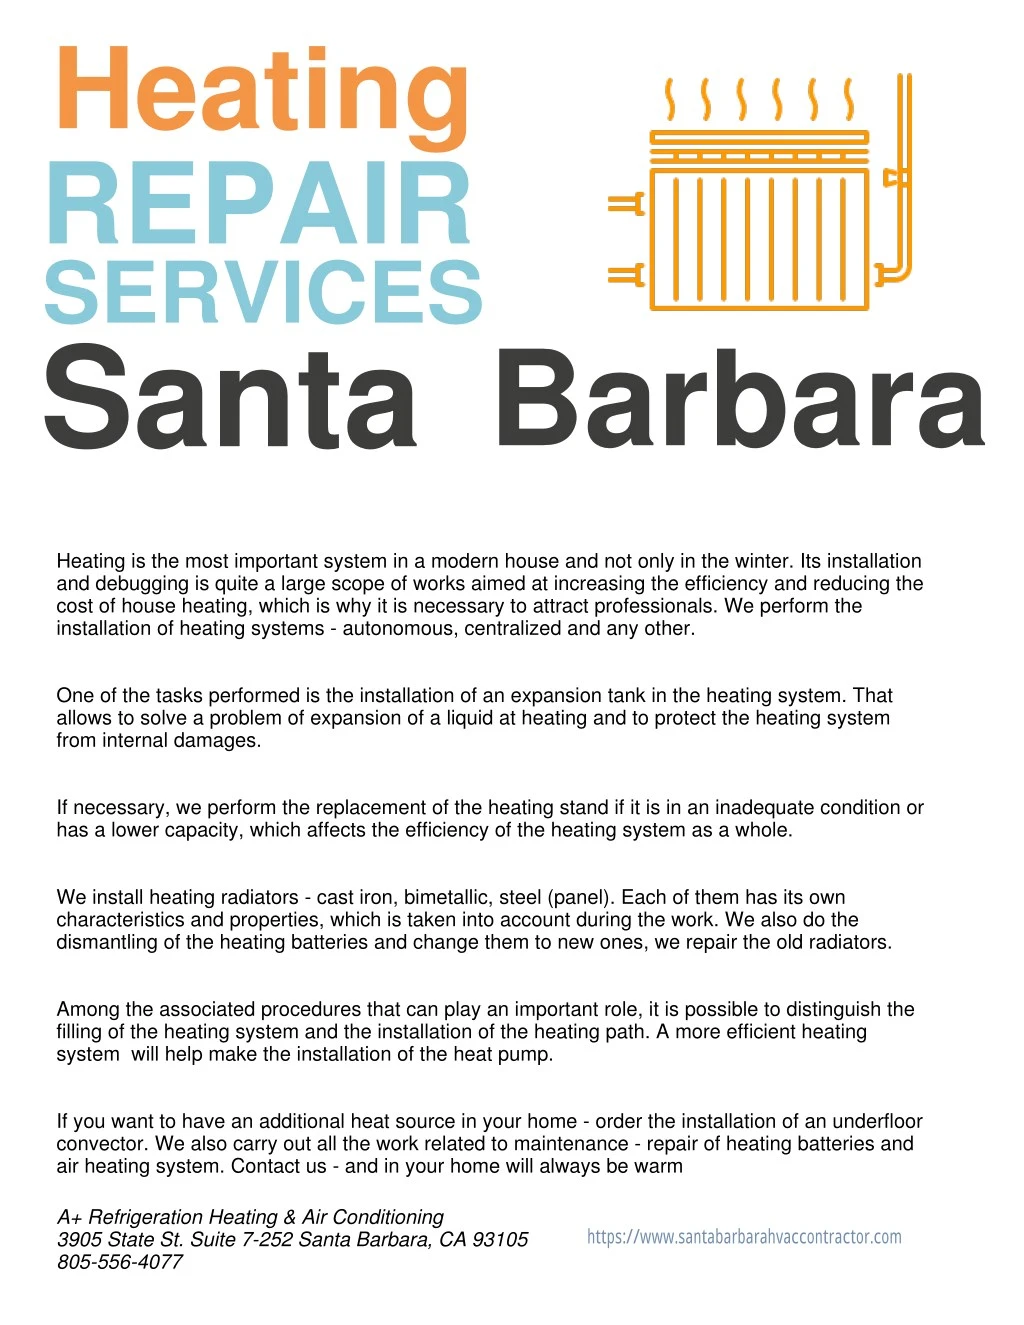 heating repair services santa barbara